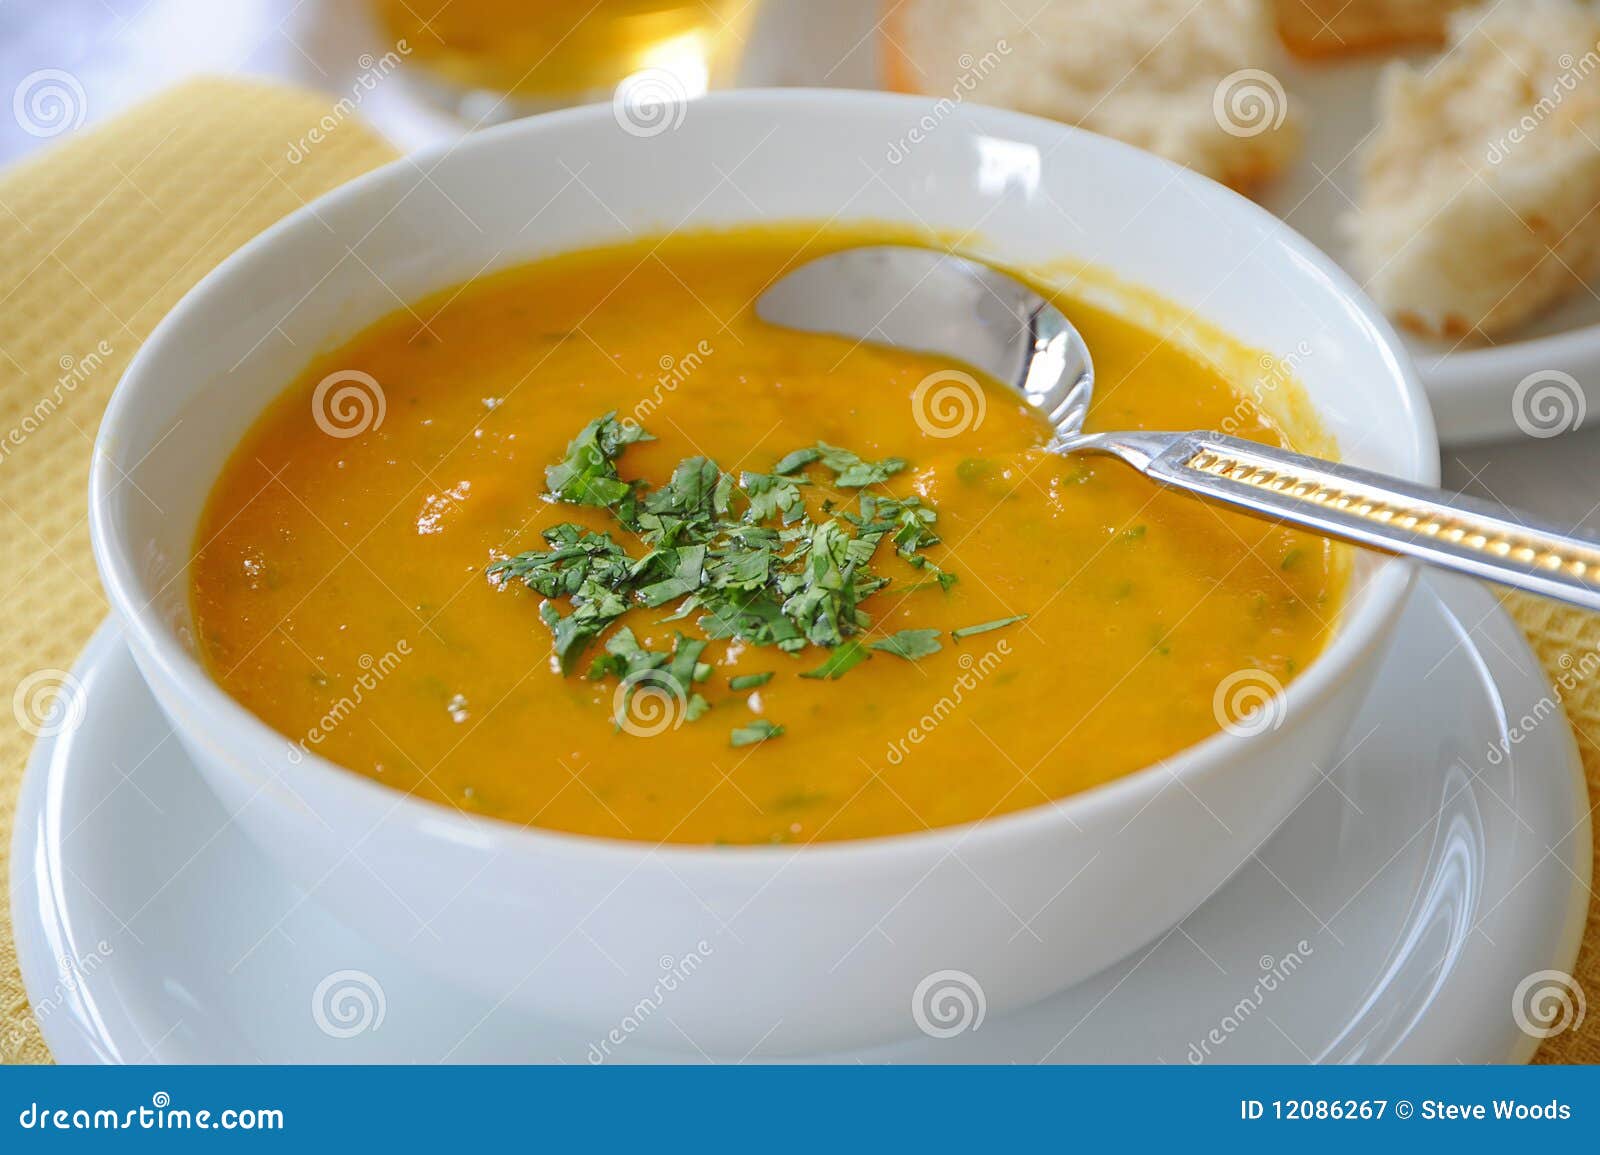 carrot & lentil soup